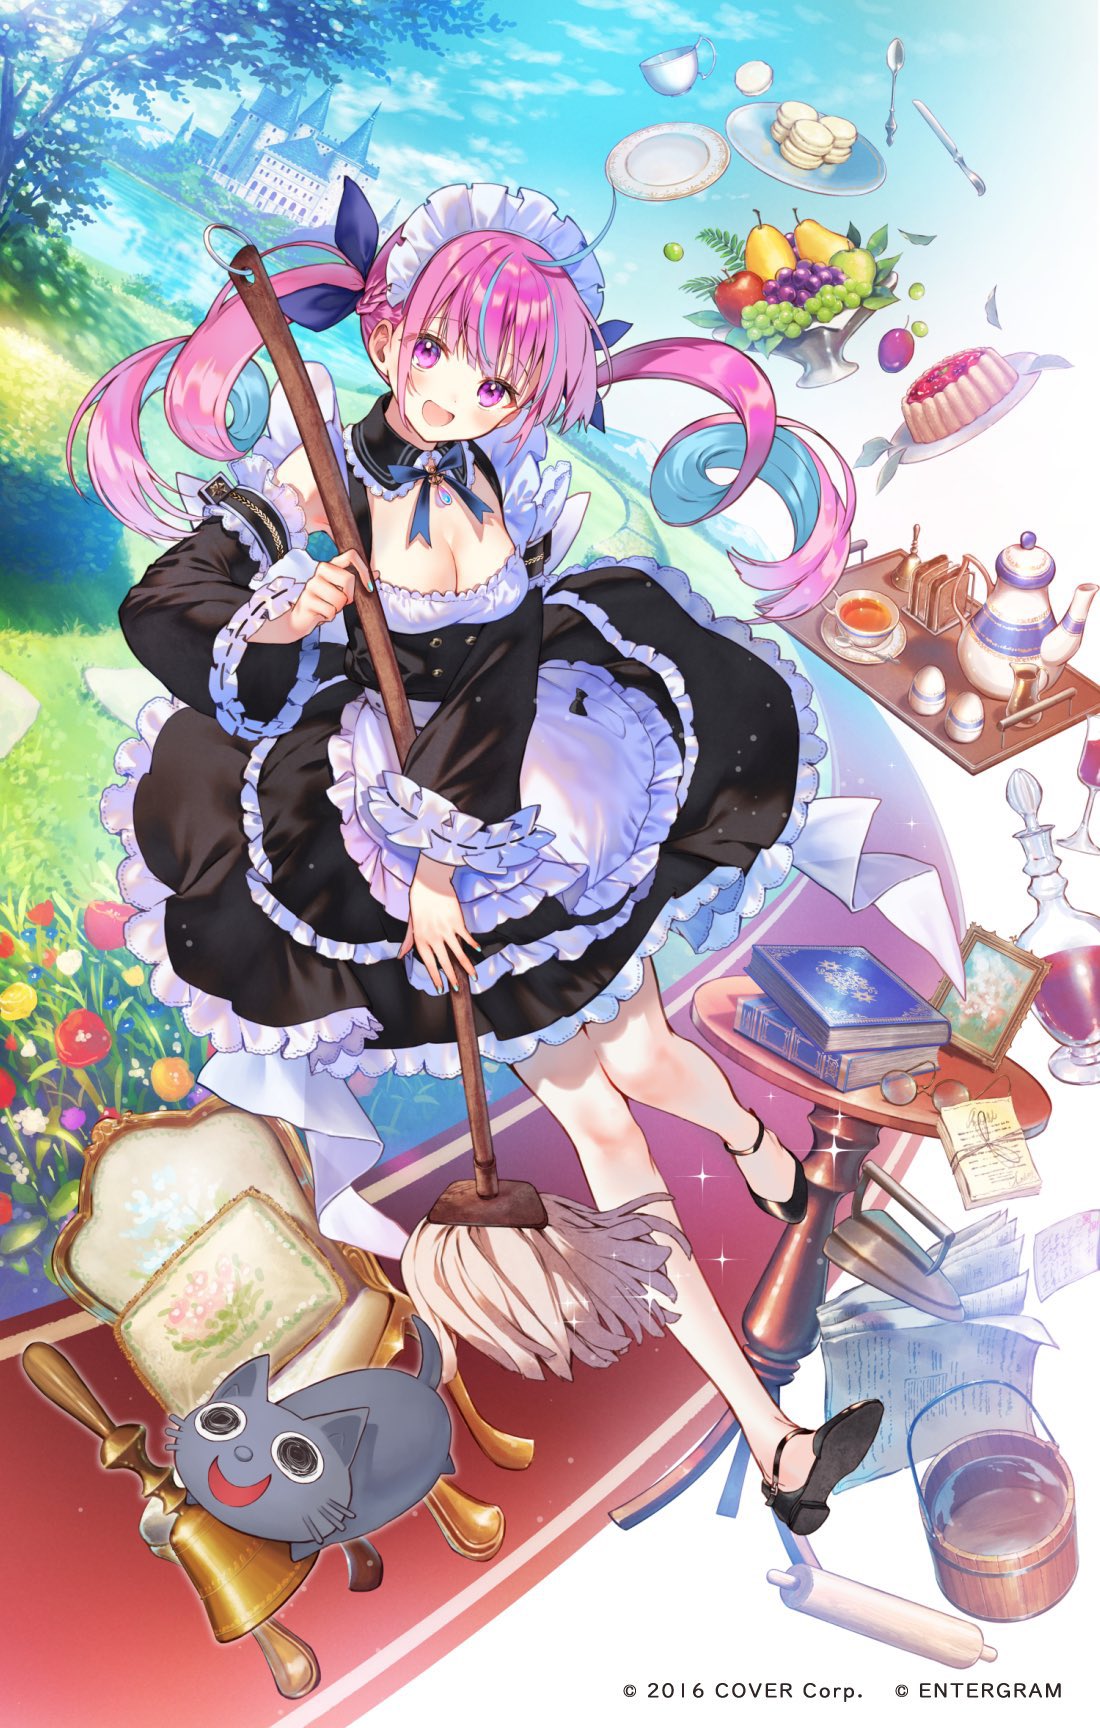 Hanekoto Hololive Minato Aqua Maid Maid Outfit Cats Sweets Fruit Tea Multi Colored Hair 1100x1728